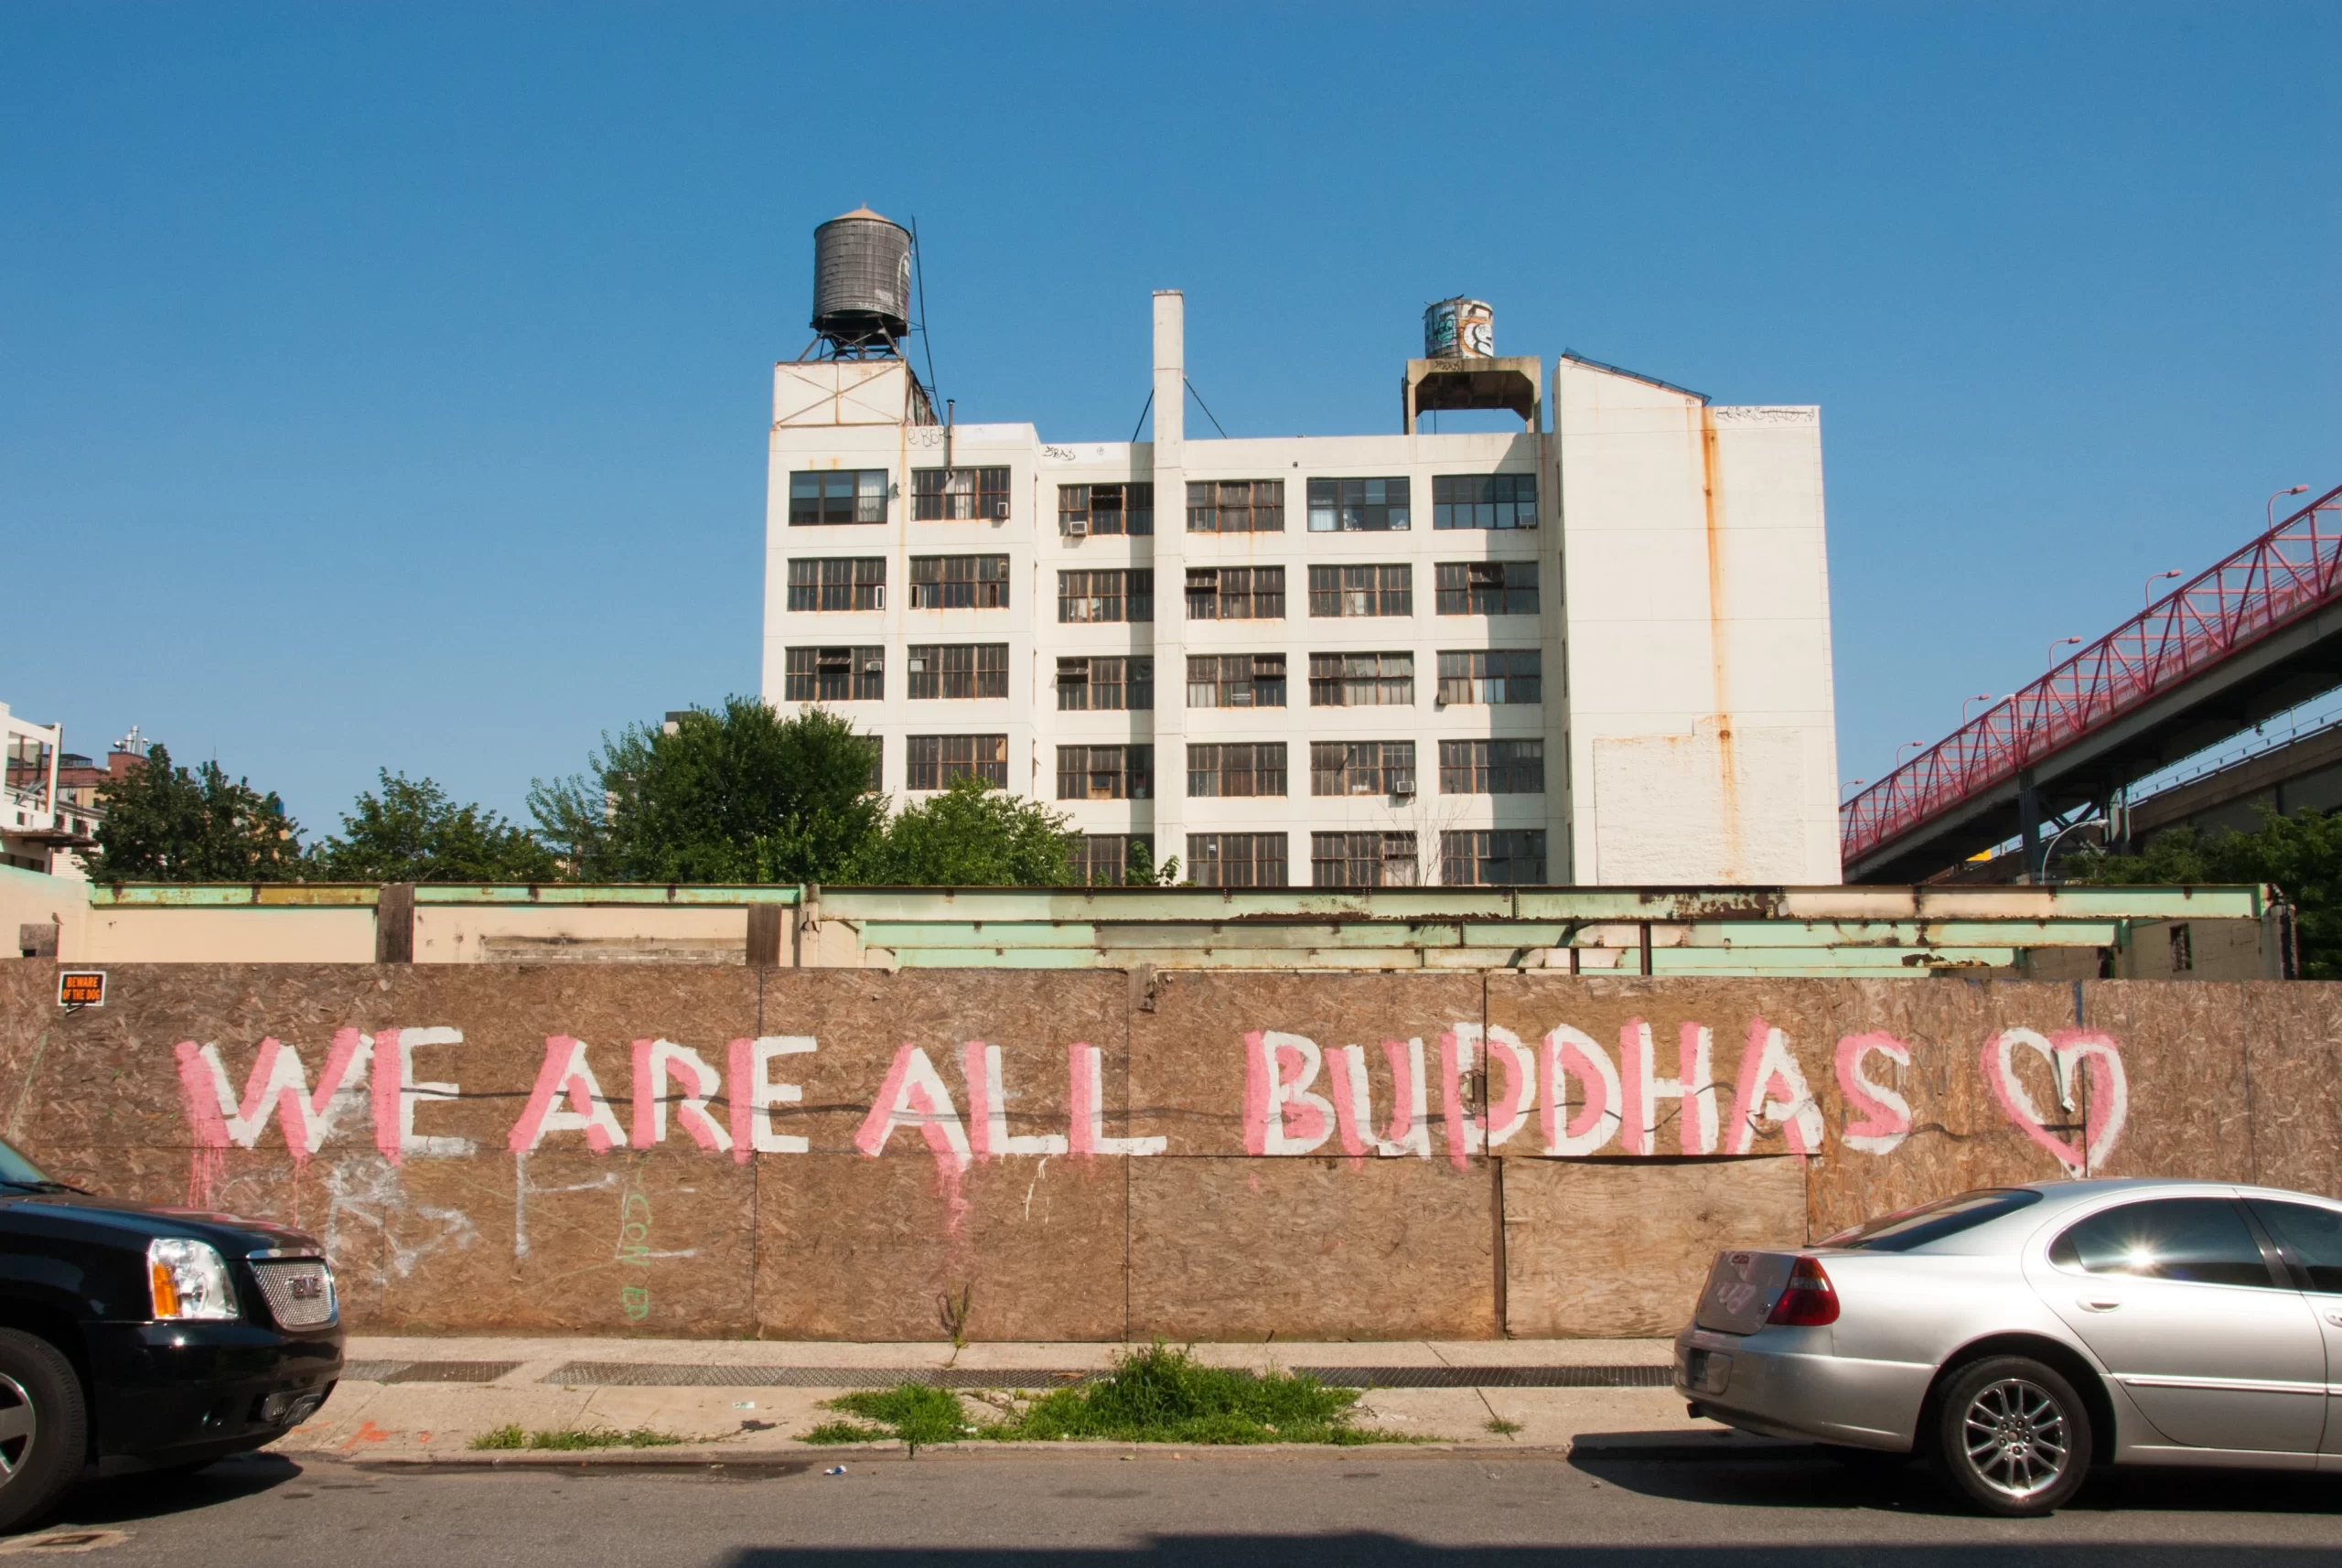 kevin-bluer-Brooklyn NYC we are All buddhas graffiti-unsplash